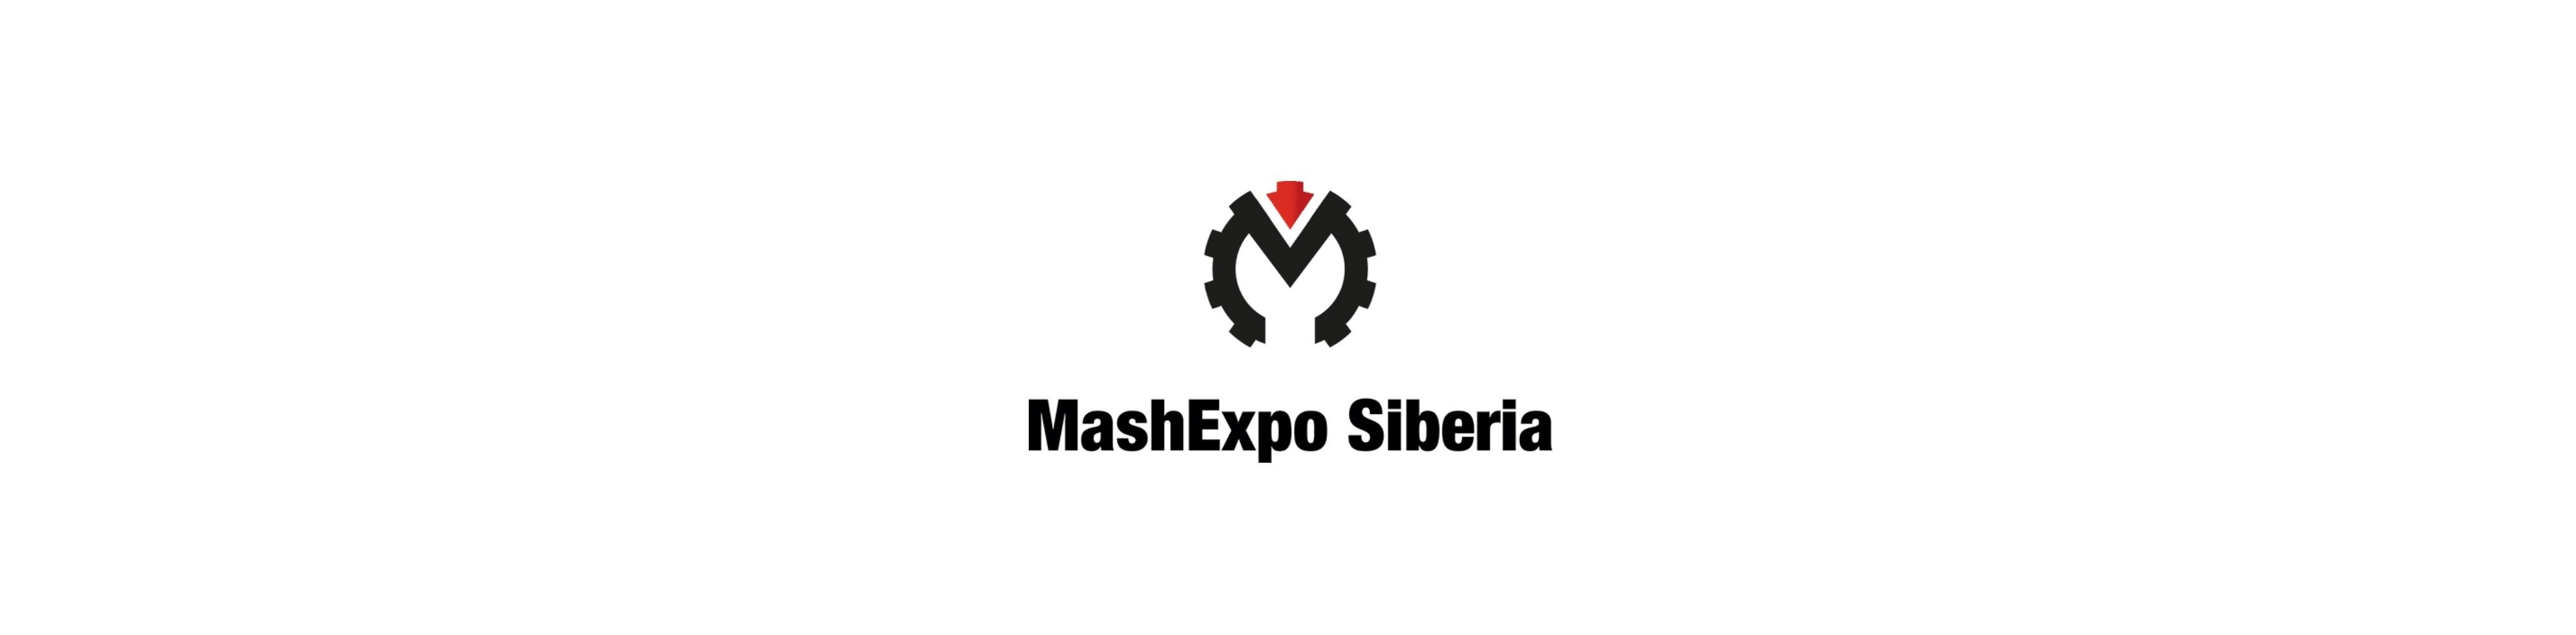 ГК ПроТехнологии принимает участие в выставке «MashExpo. Siberia»